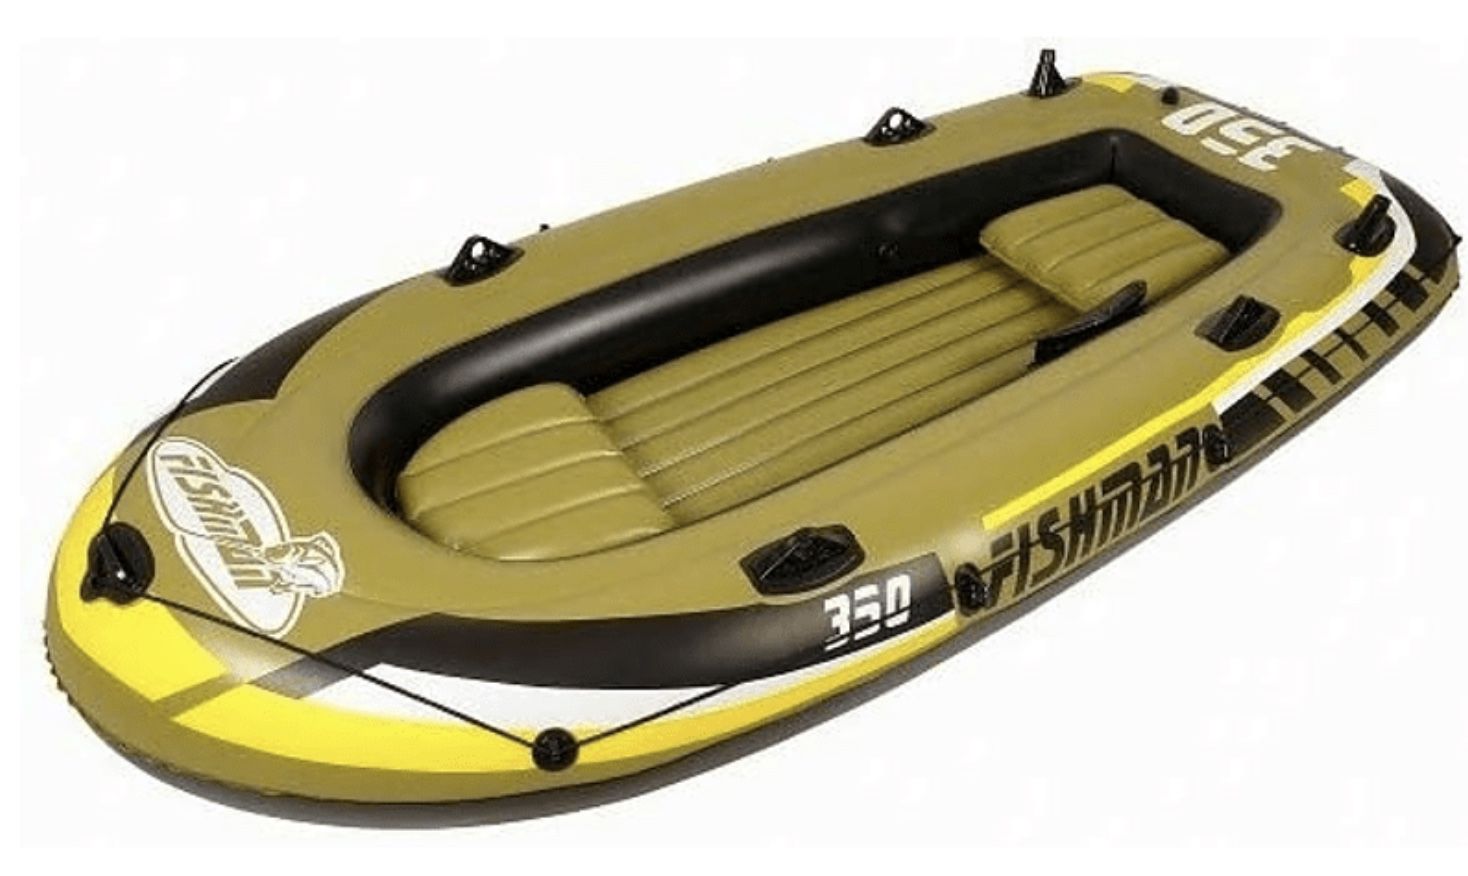 Fishman Lamar SBM Schlauchboot mit Motor für 272,98€ (statt 304€)